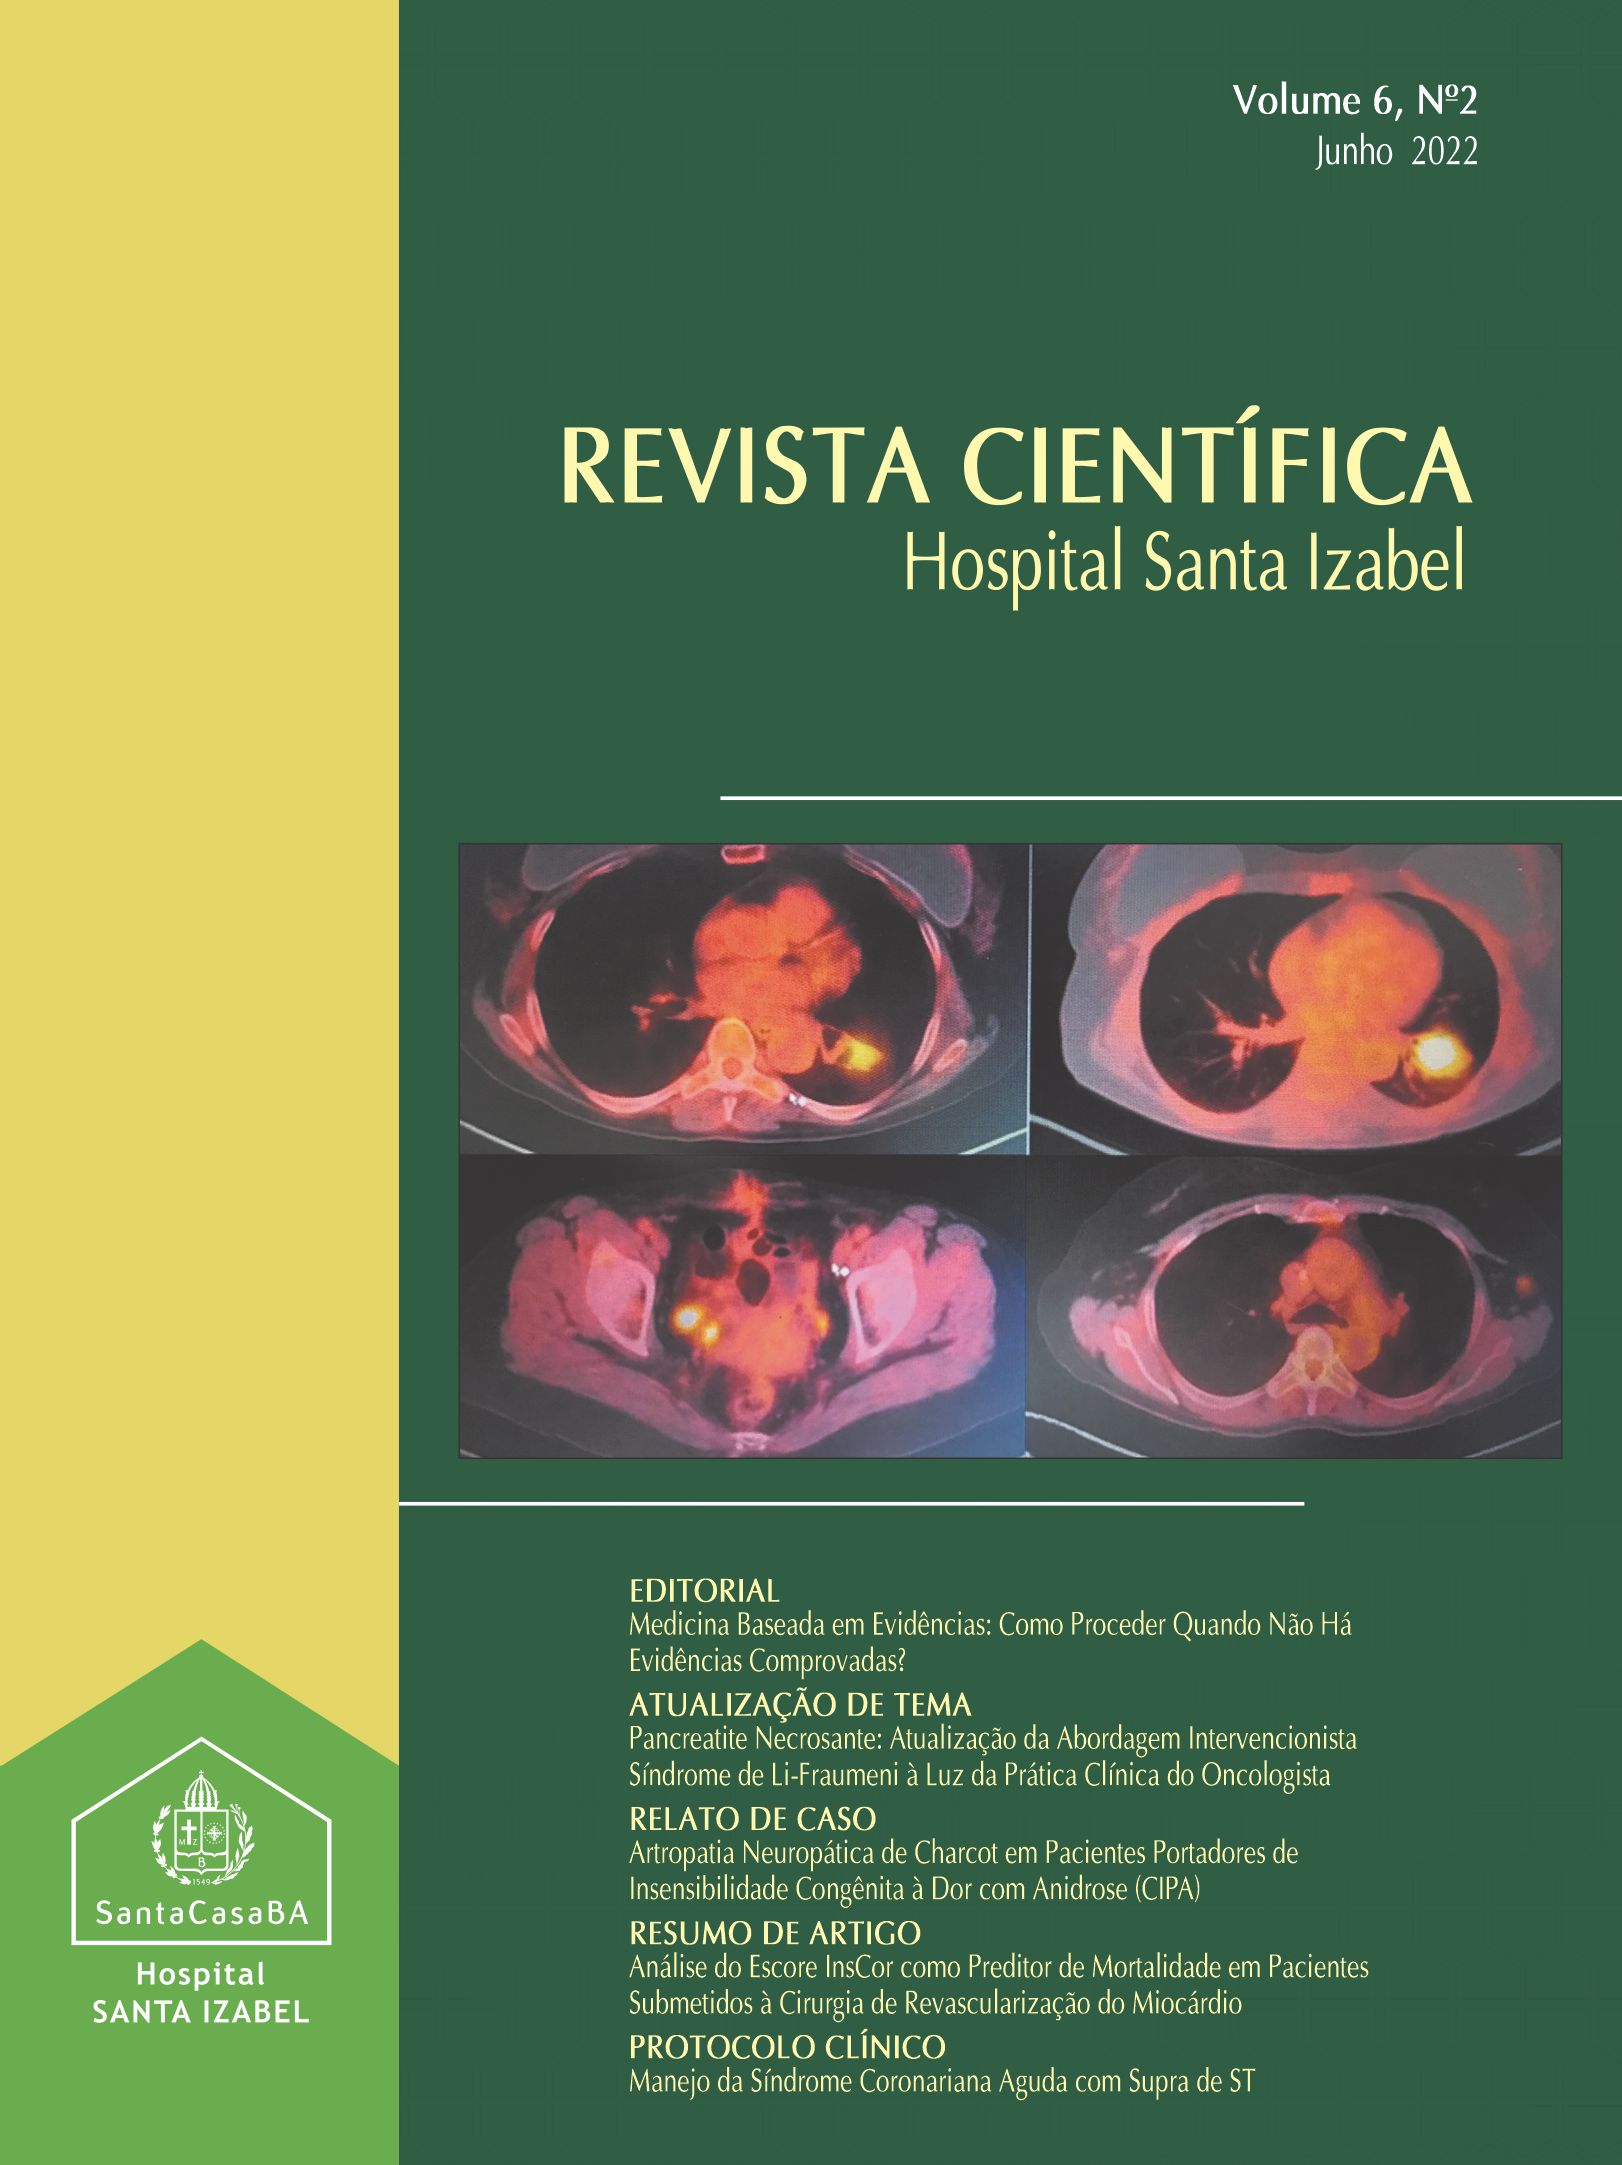           Visualizar v. 6 n. 2 (2022): Revista Científica Hospital Santa Izabel
        